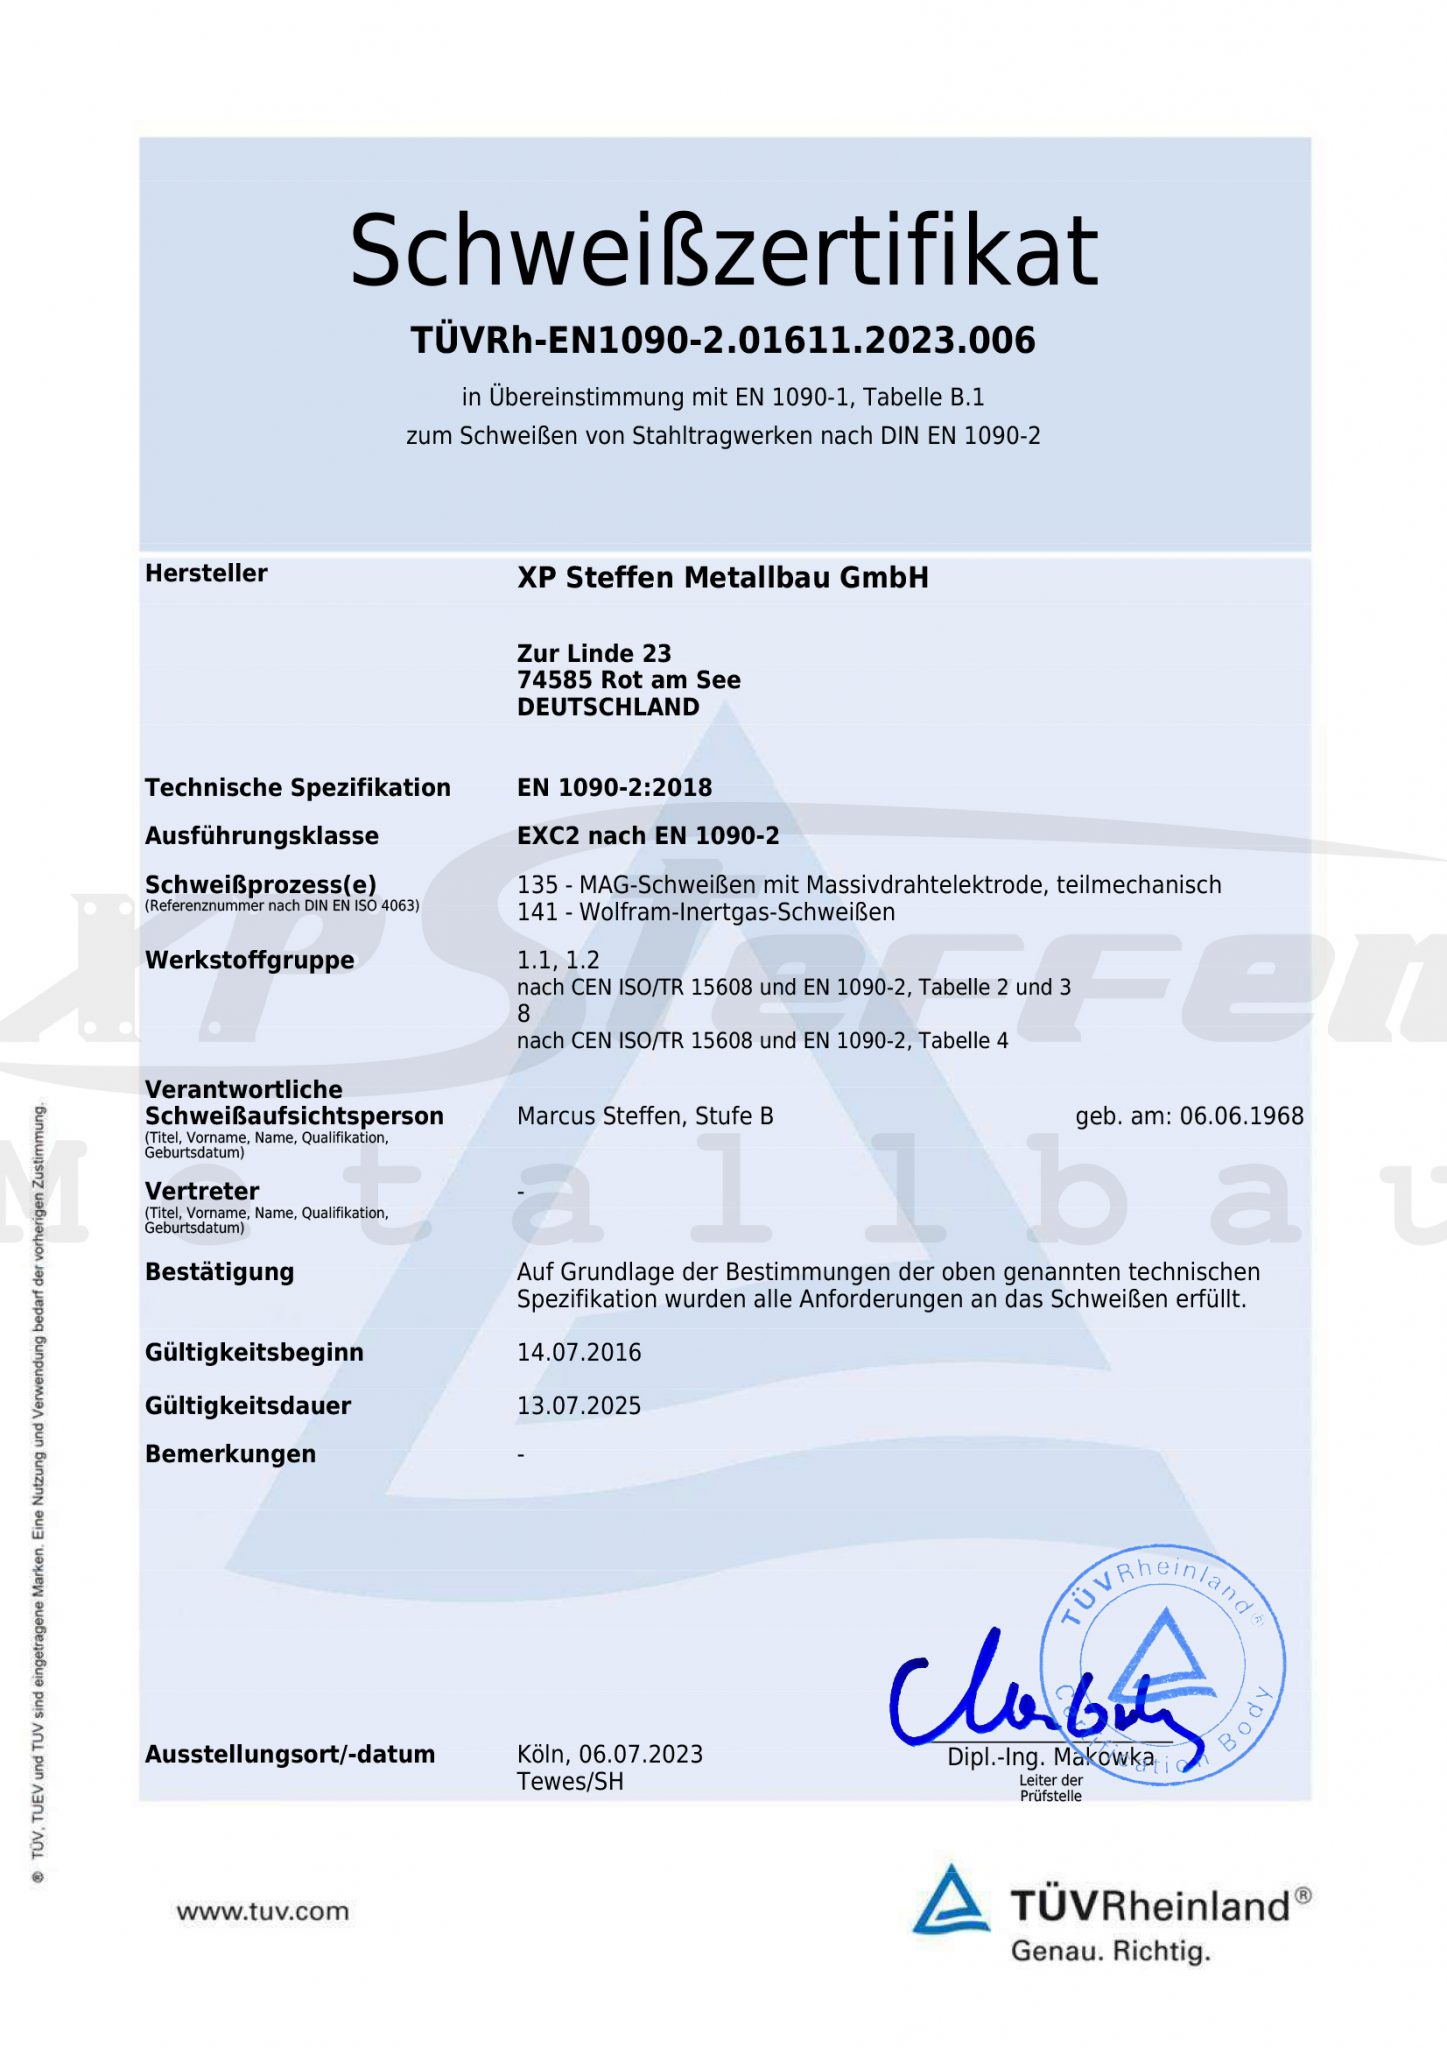 TÜVRh-EN1090-2.01611.2023.006_extsigned-1